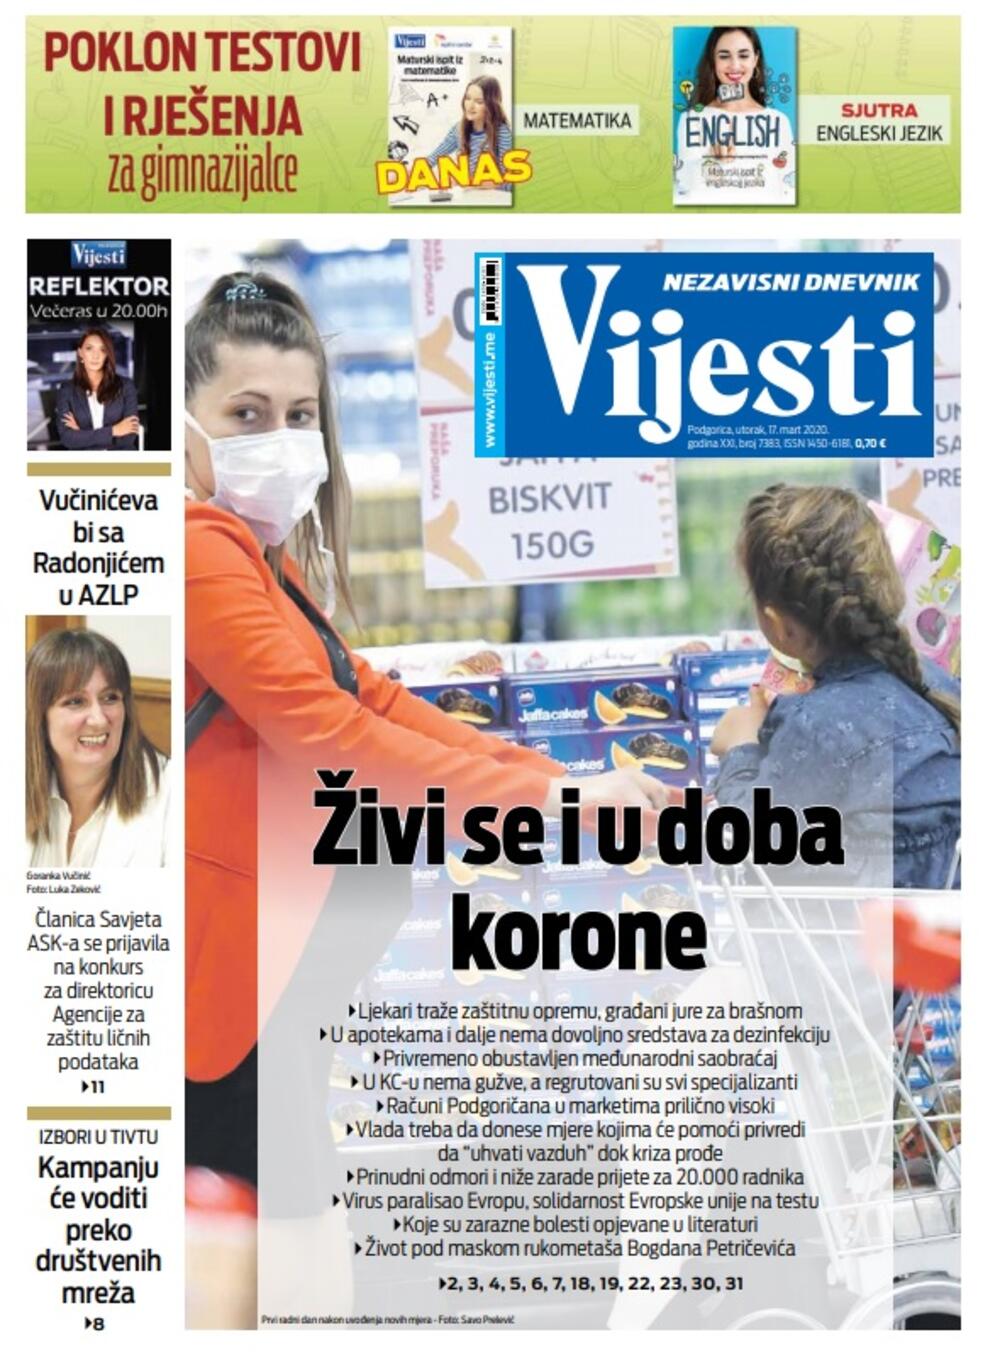 Naslovna strana "Vijesti" za 17. mart 2020. godine, Foto: "Vijesti"